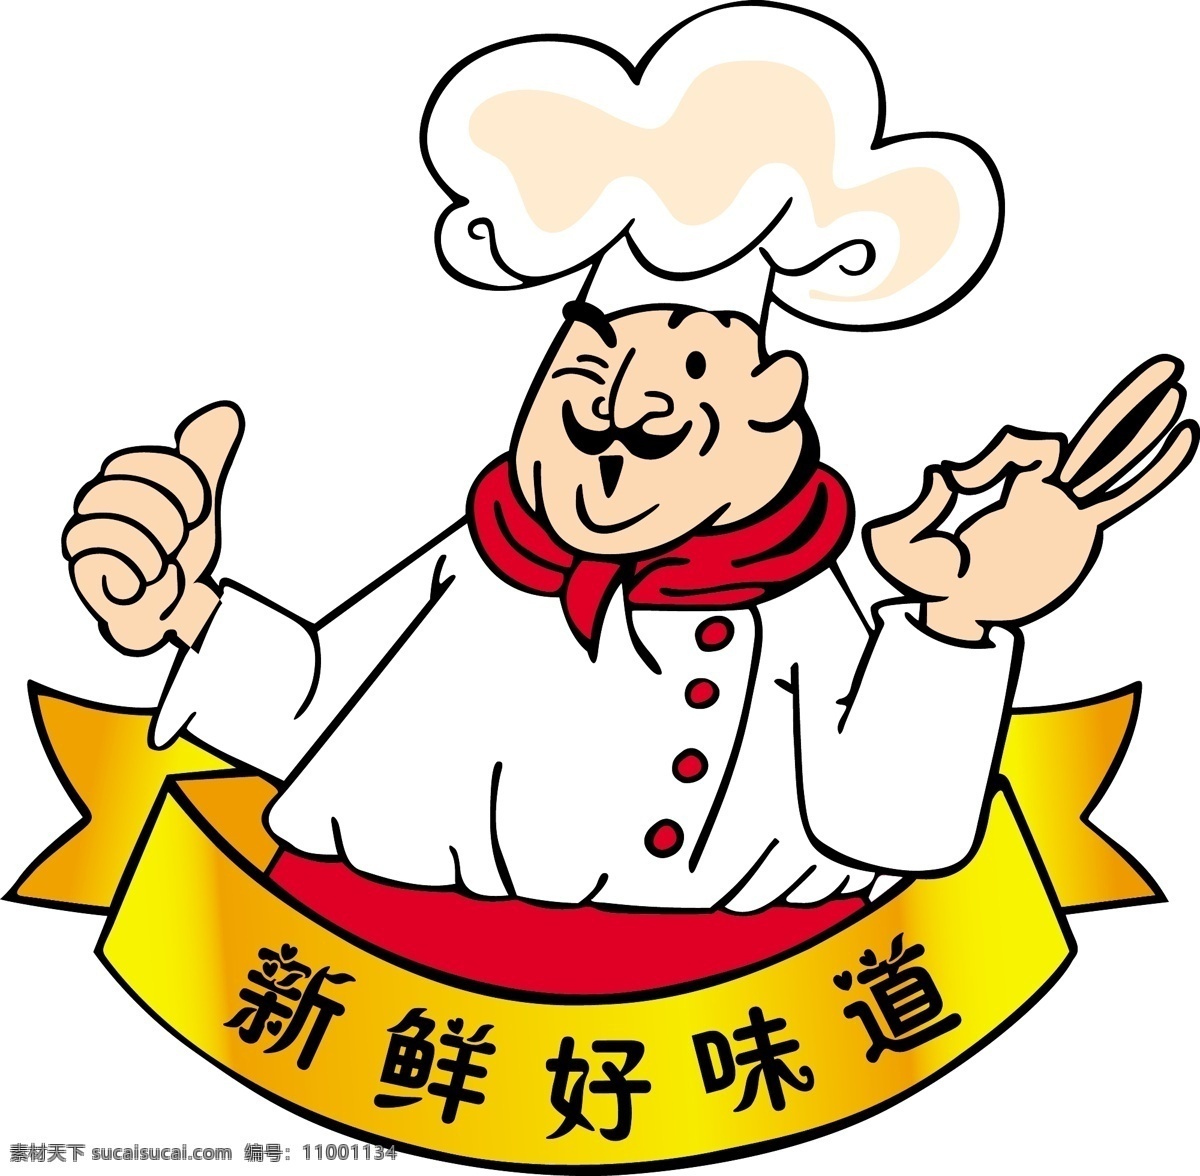 新鲜好味道 厨师logo 矢量厨师 ai矢量素材 餐饮美食 生活百科 矢量